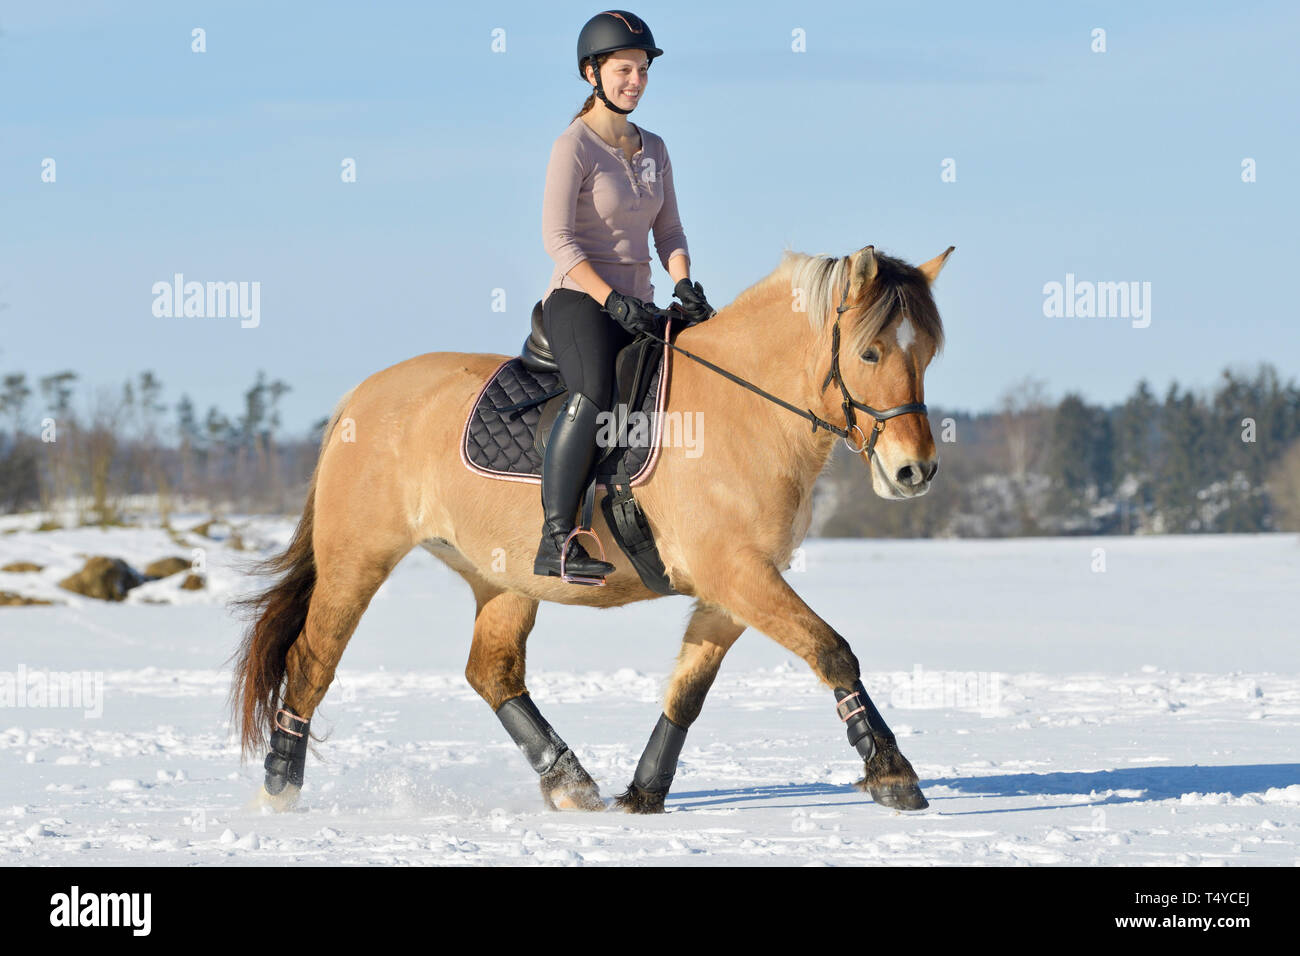 Reiter auf dem Rücken von einem Norwegischen Fjord Reiten im Schnee, Outfit in Schwarz und Rose Gold Stockfoto